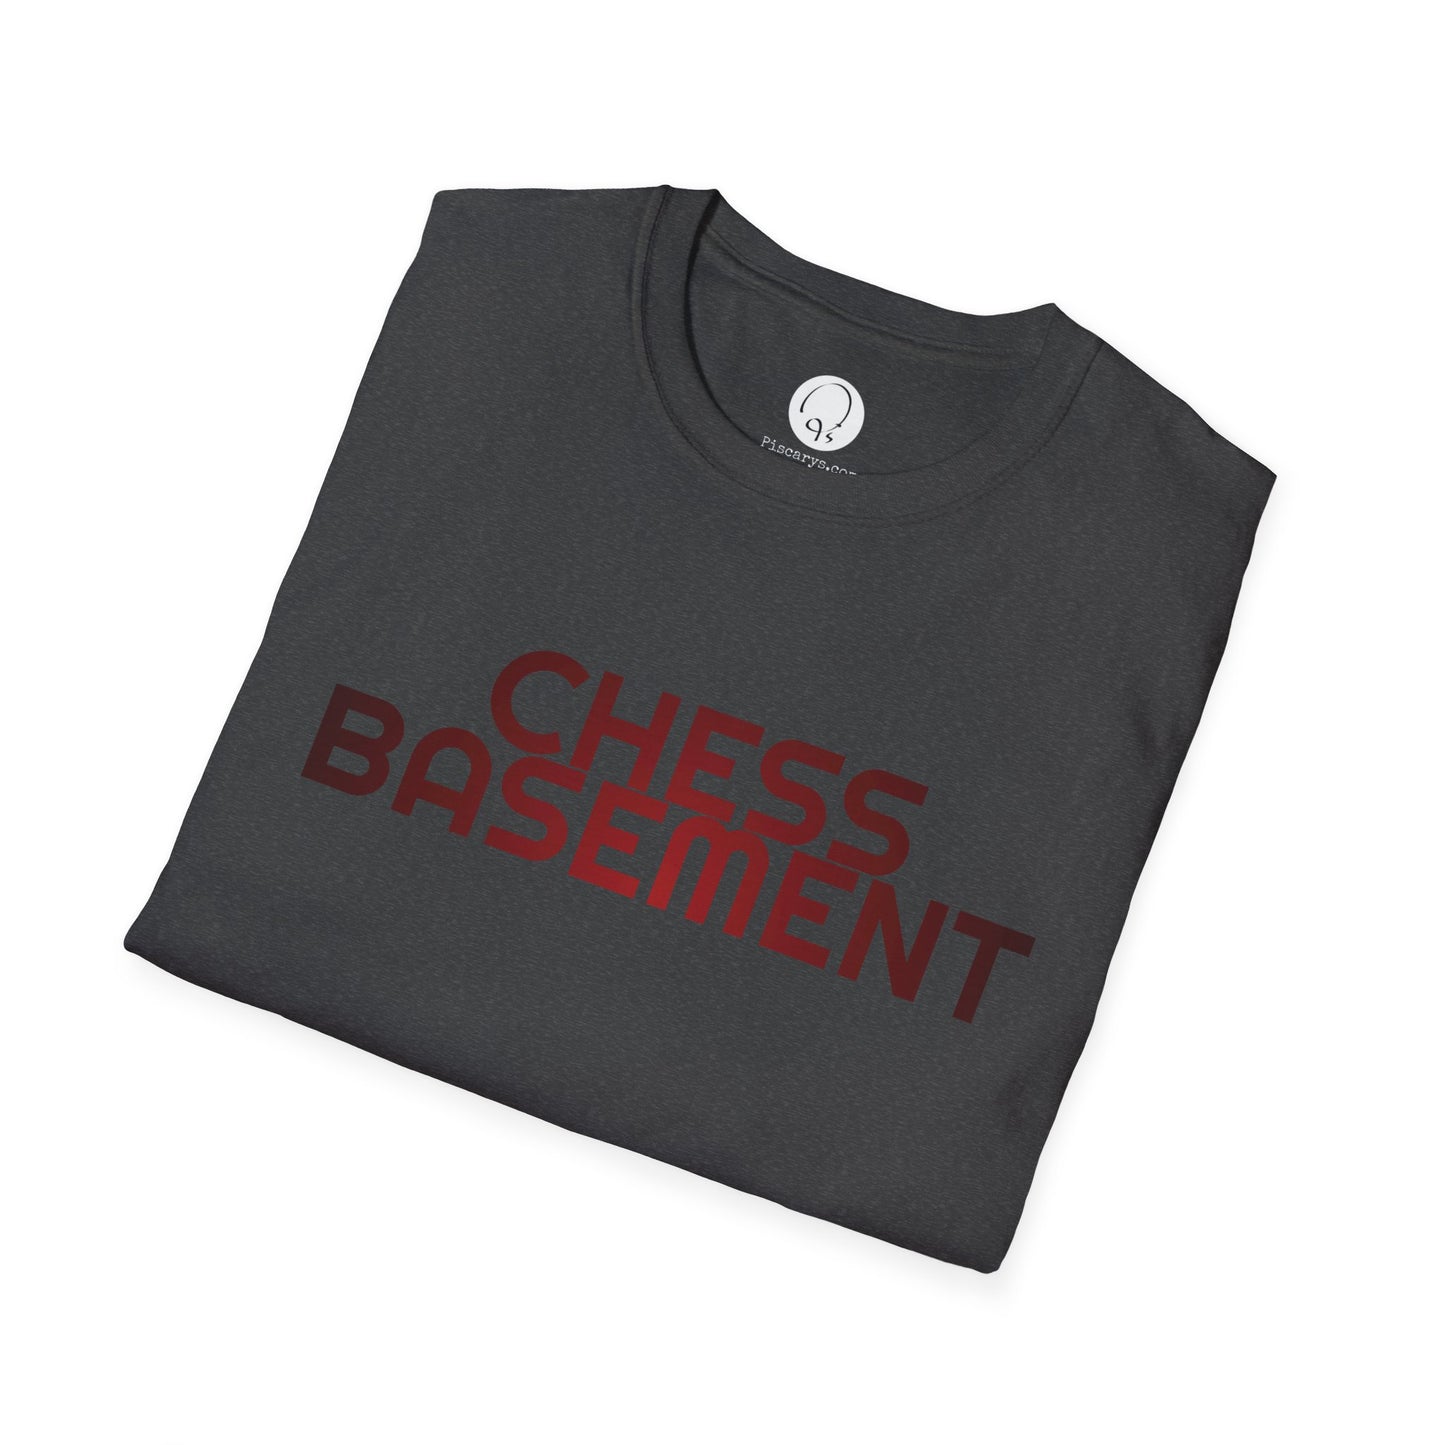 Chess Basement Shirt